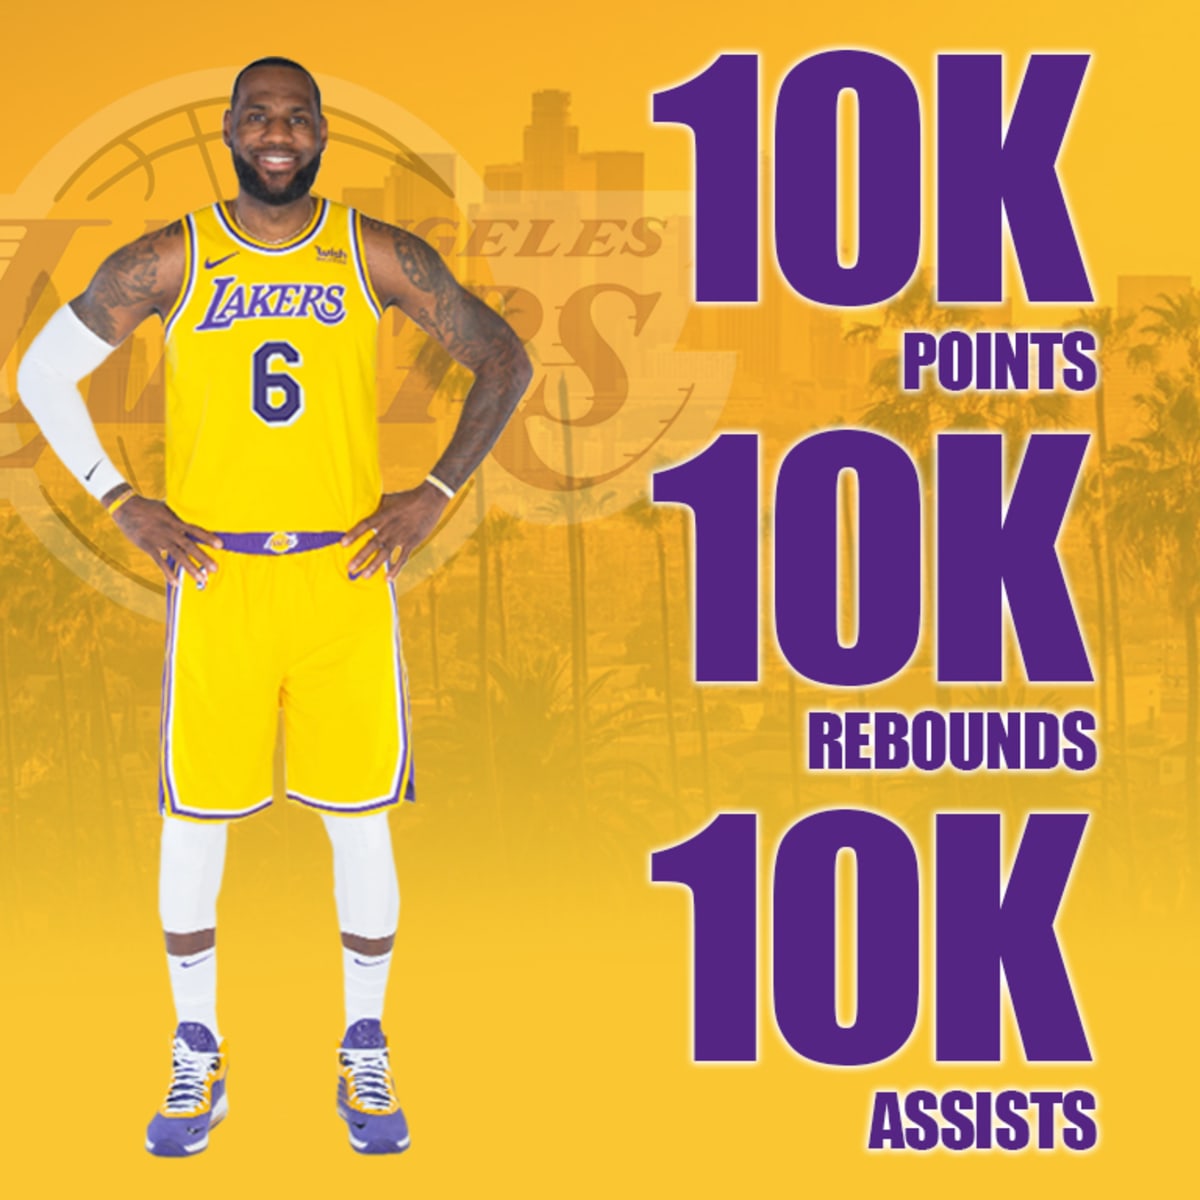 Nieuwe mijlpaal voor LeBron James: NBA-icoon deelt assist nummer 10.000 (!)  uit